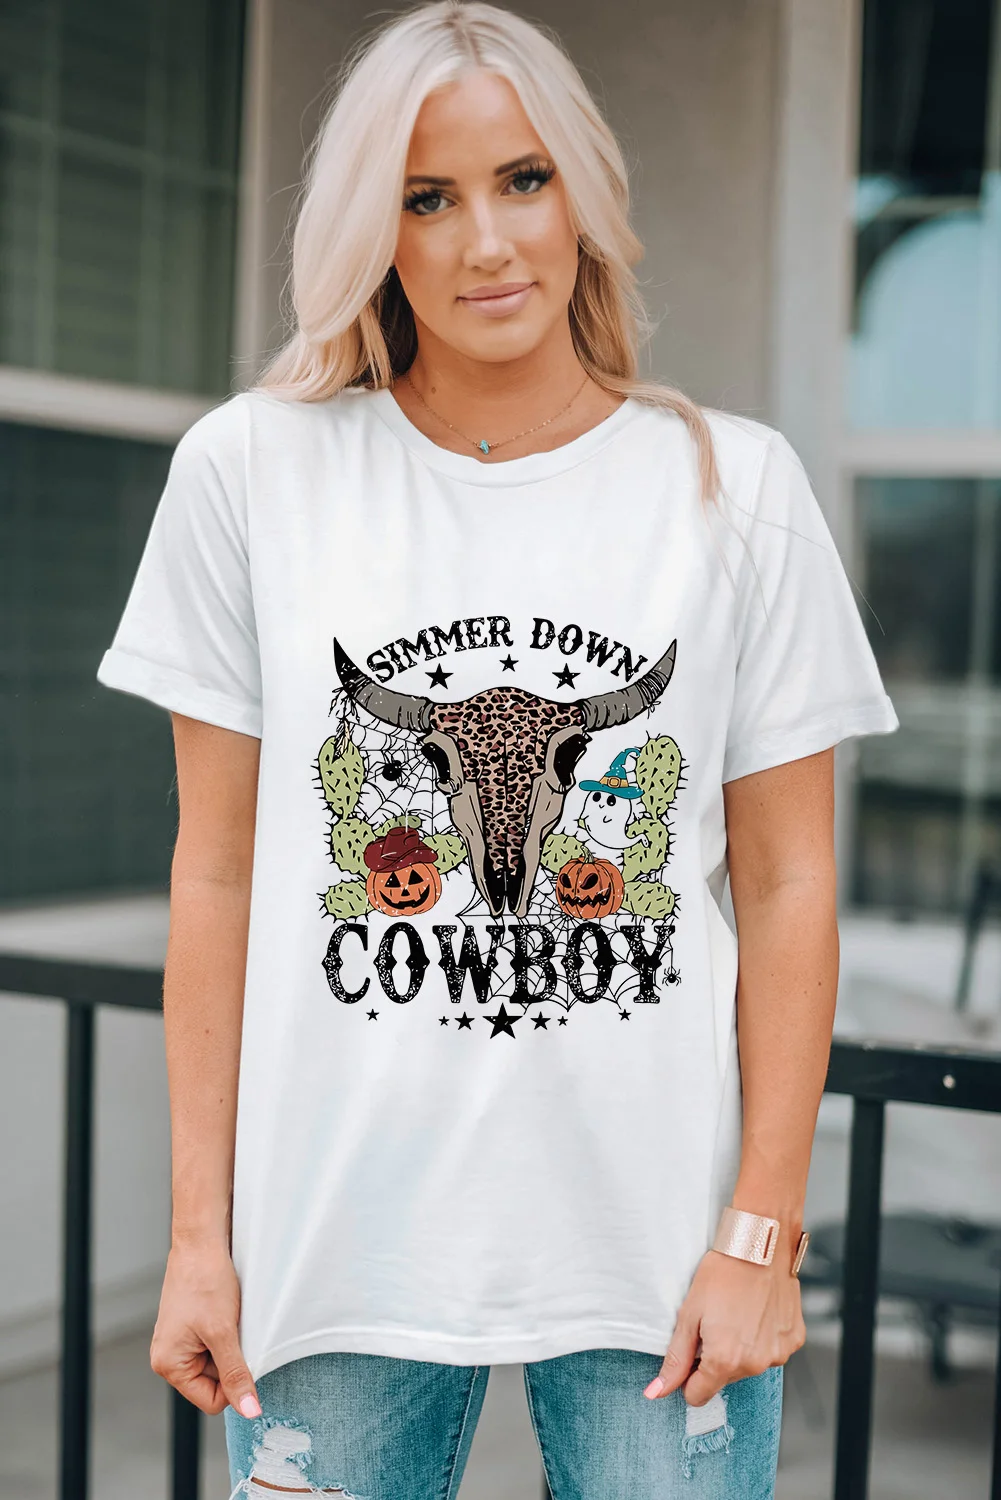 Dear-Lover Graphic Women's T-Shirts Vibe COWBOY Fashion Customized T-Shirt Women Playeras De Mujer